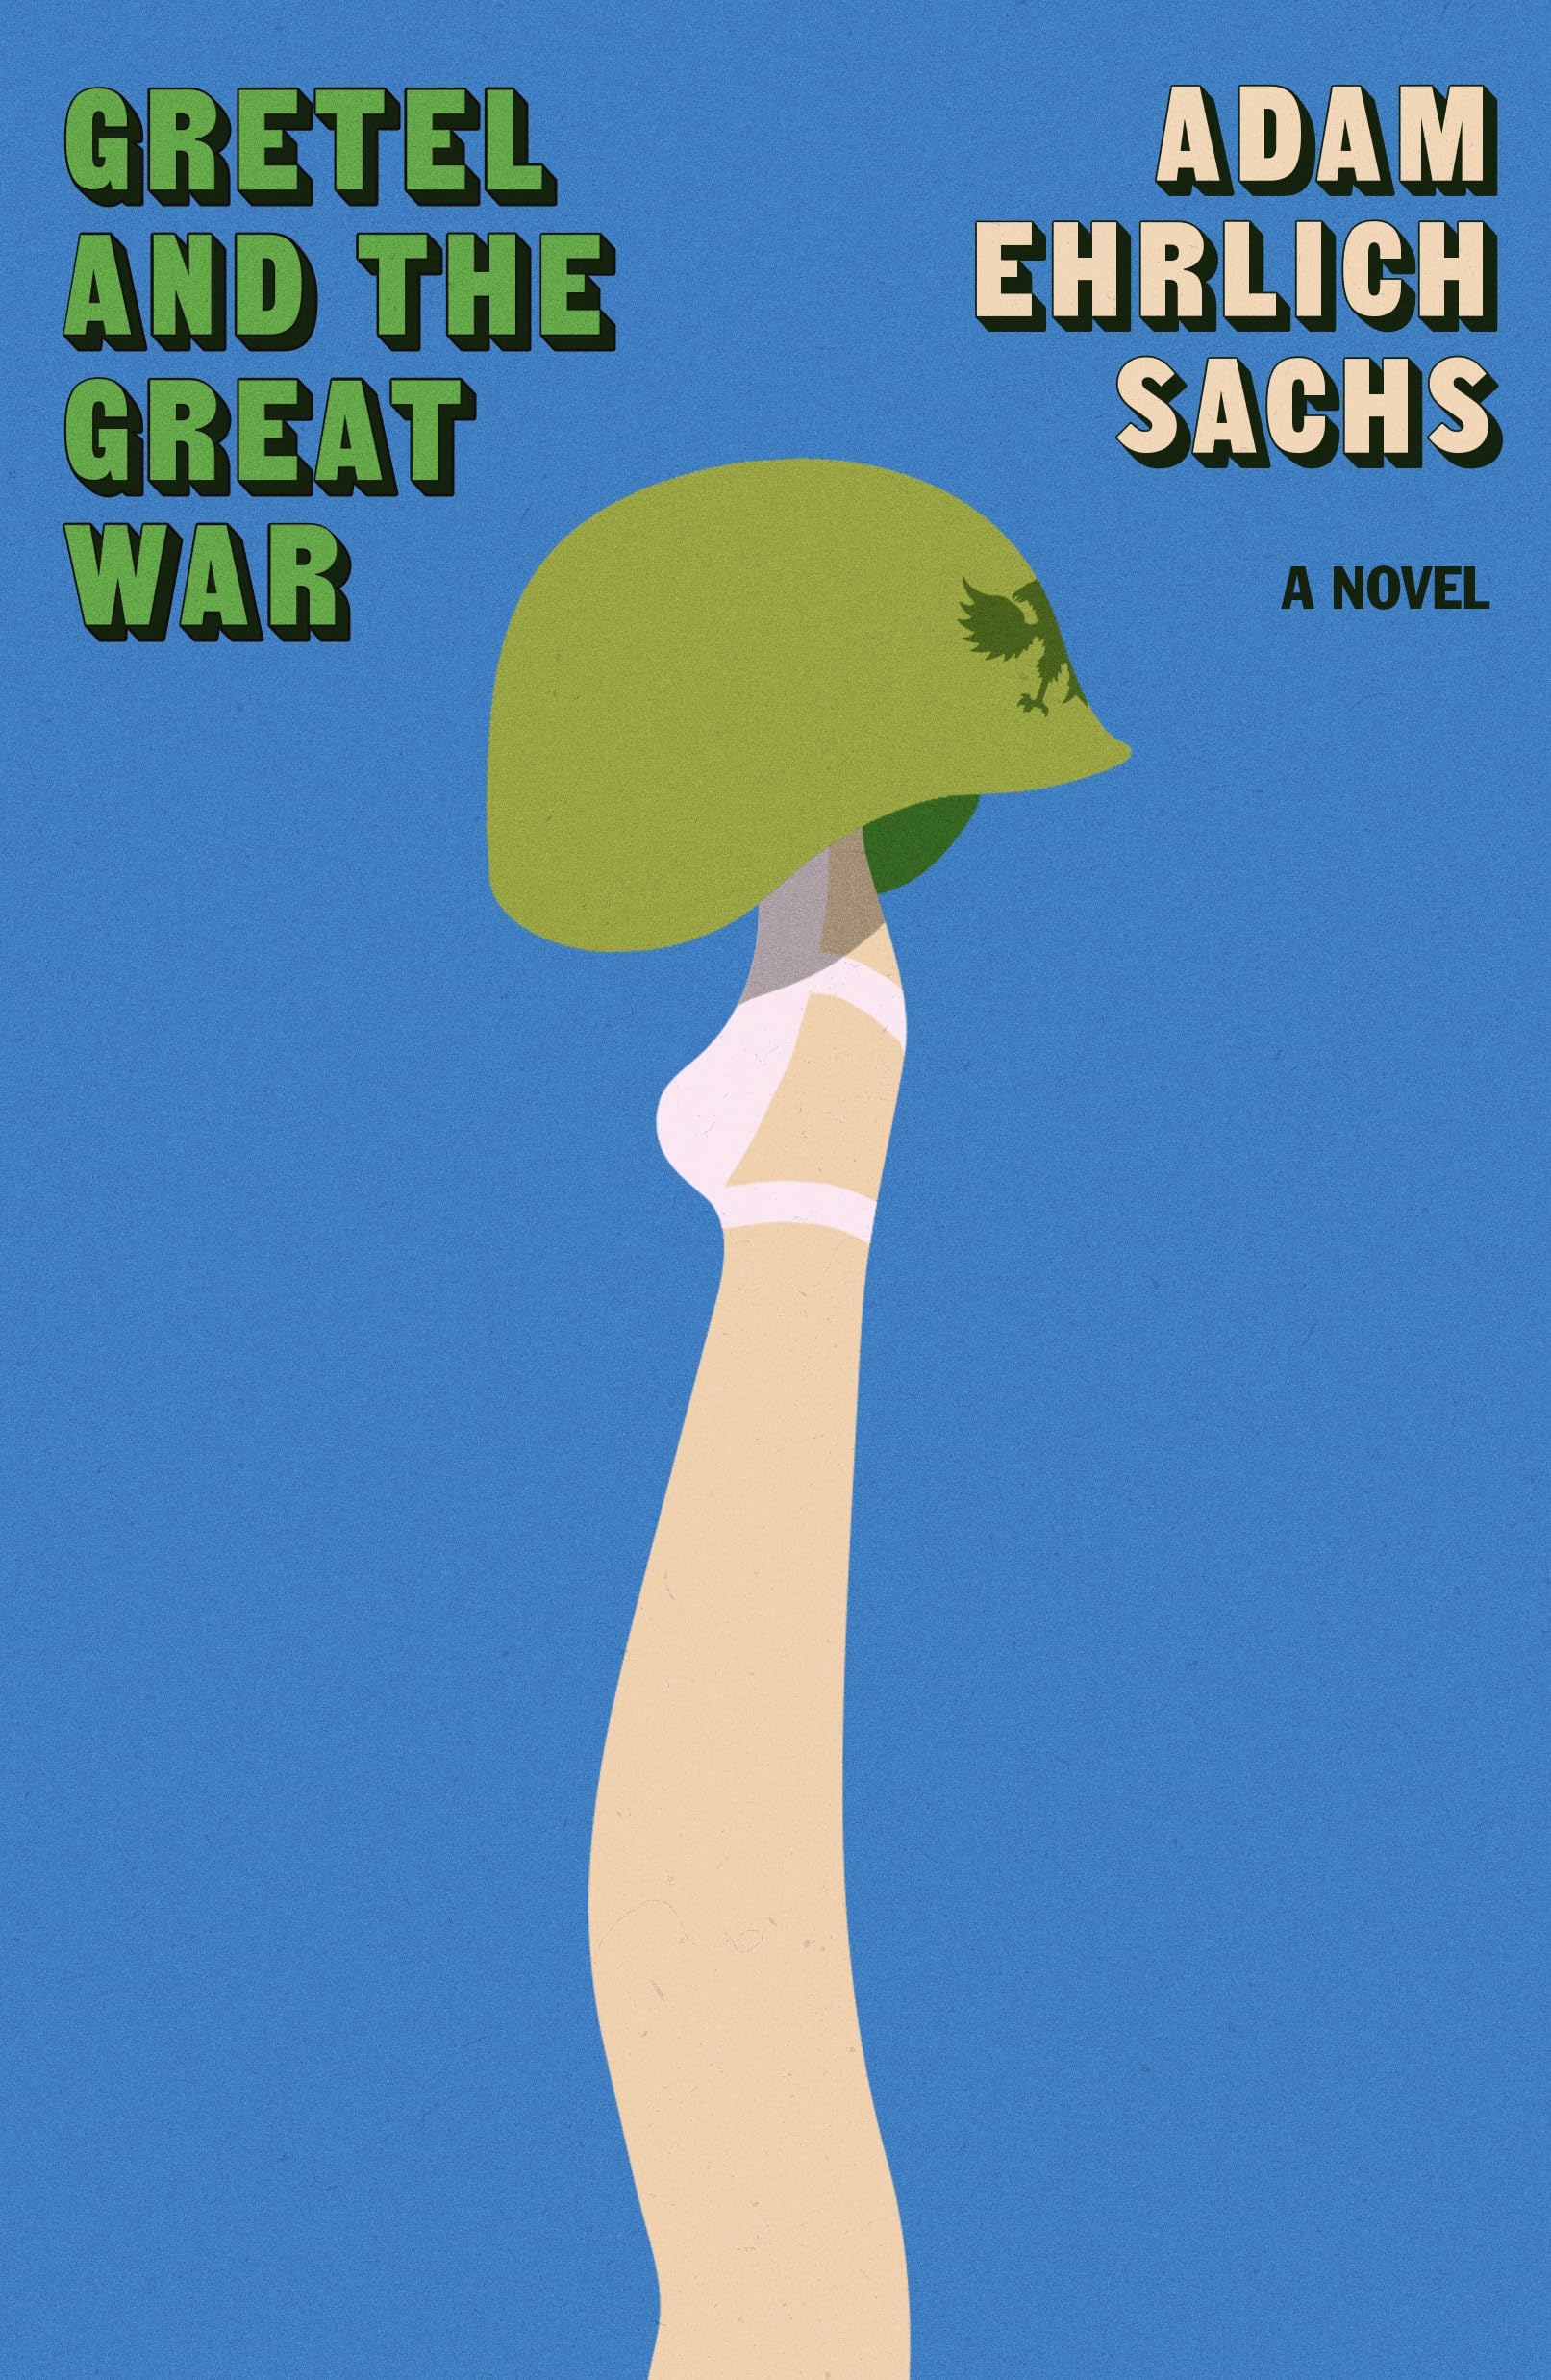 Gretel and the Great War by Sachs, Adam Ehrlich